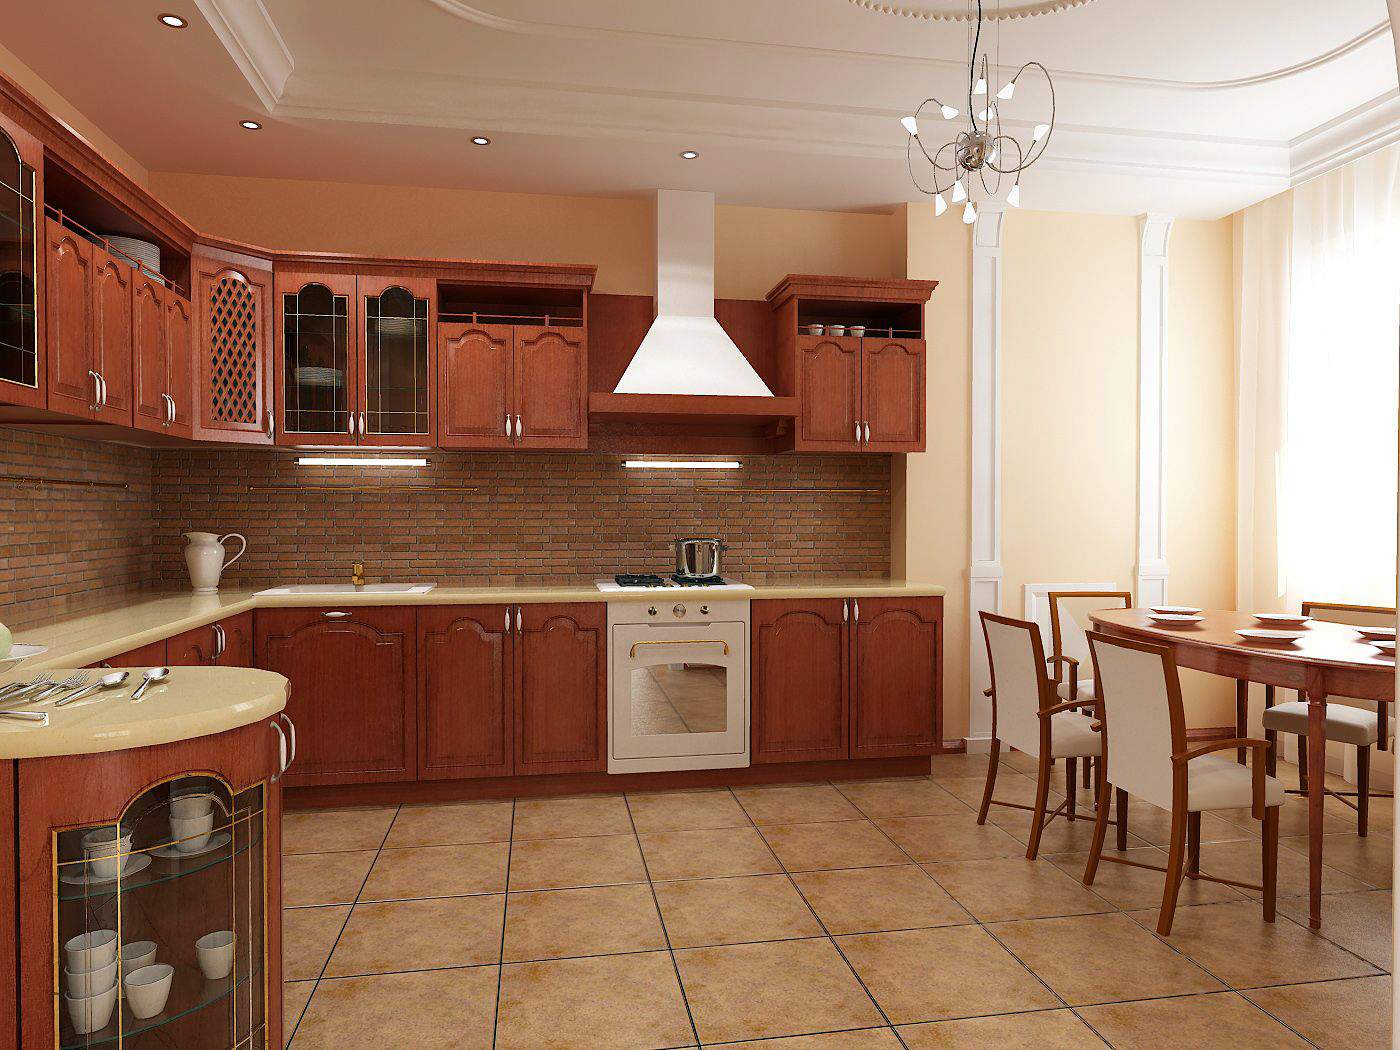 home-kitchen-interior-design-ideas